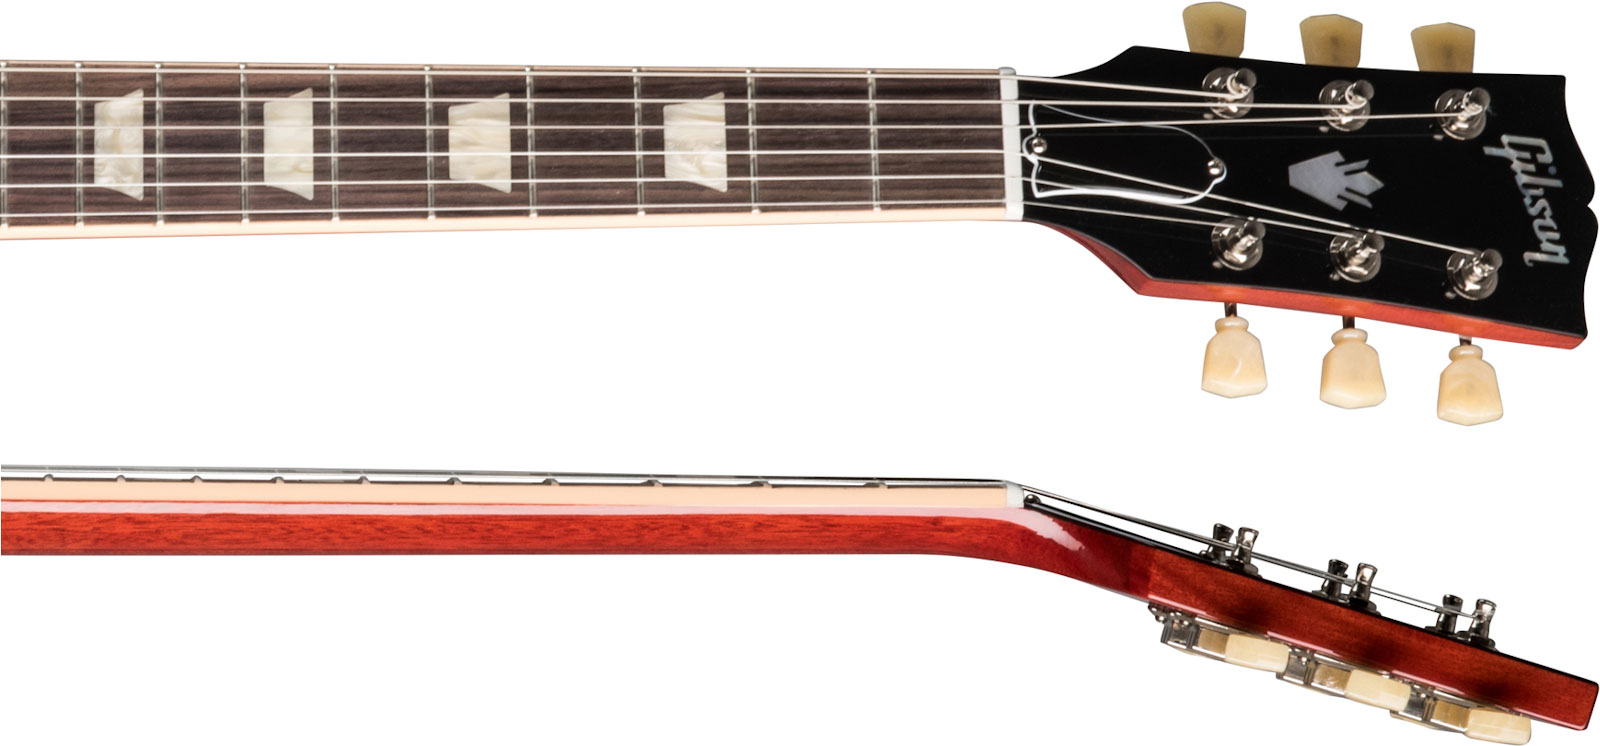 Gibson Sg Standard '61 2h Ht Rw - Vintage Cherry - Retro-rock elektrische gitaar - Variation 3